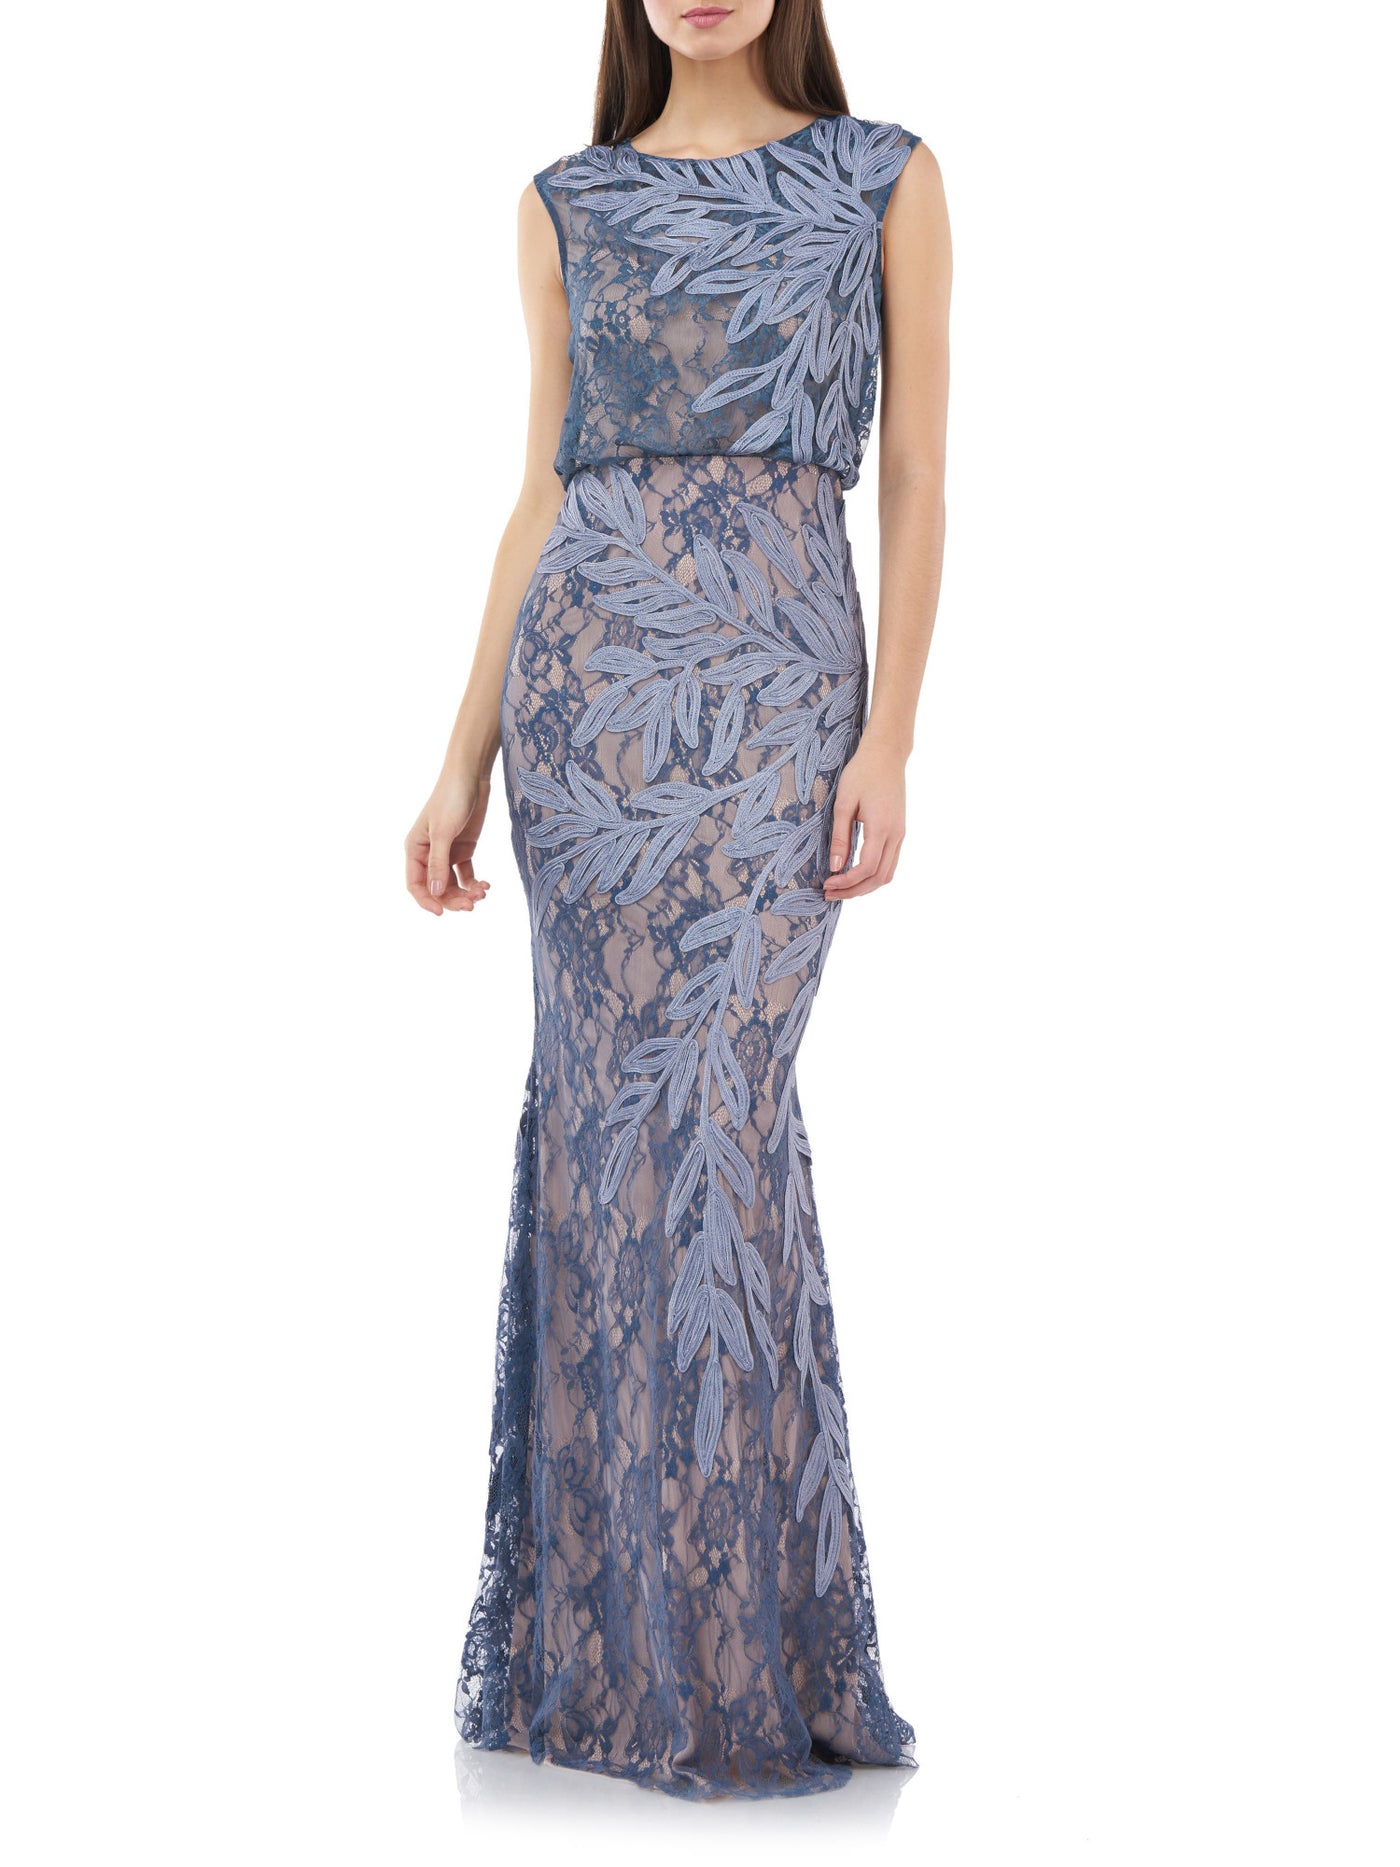 JS COLLECTIONS Womens Light Blue Zippered Lined Sleeveless Jewel Neck Full-Length Evening Blouson Dress 8